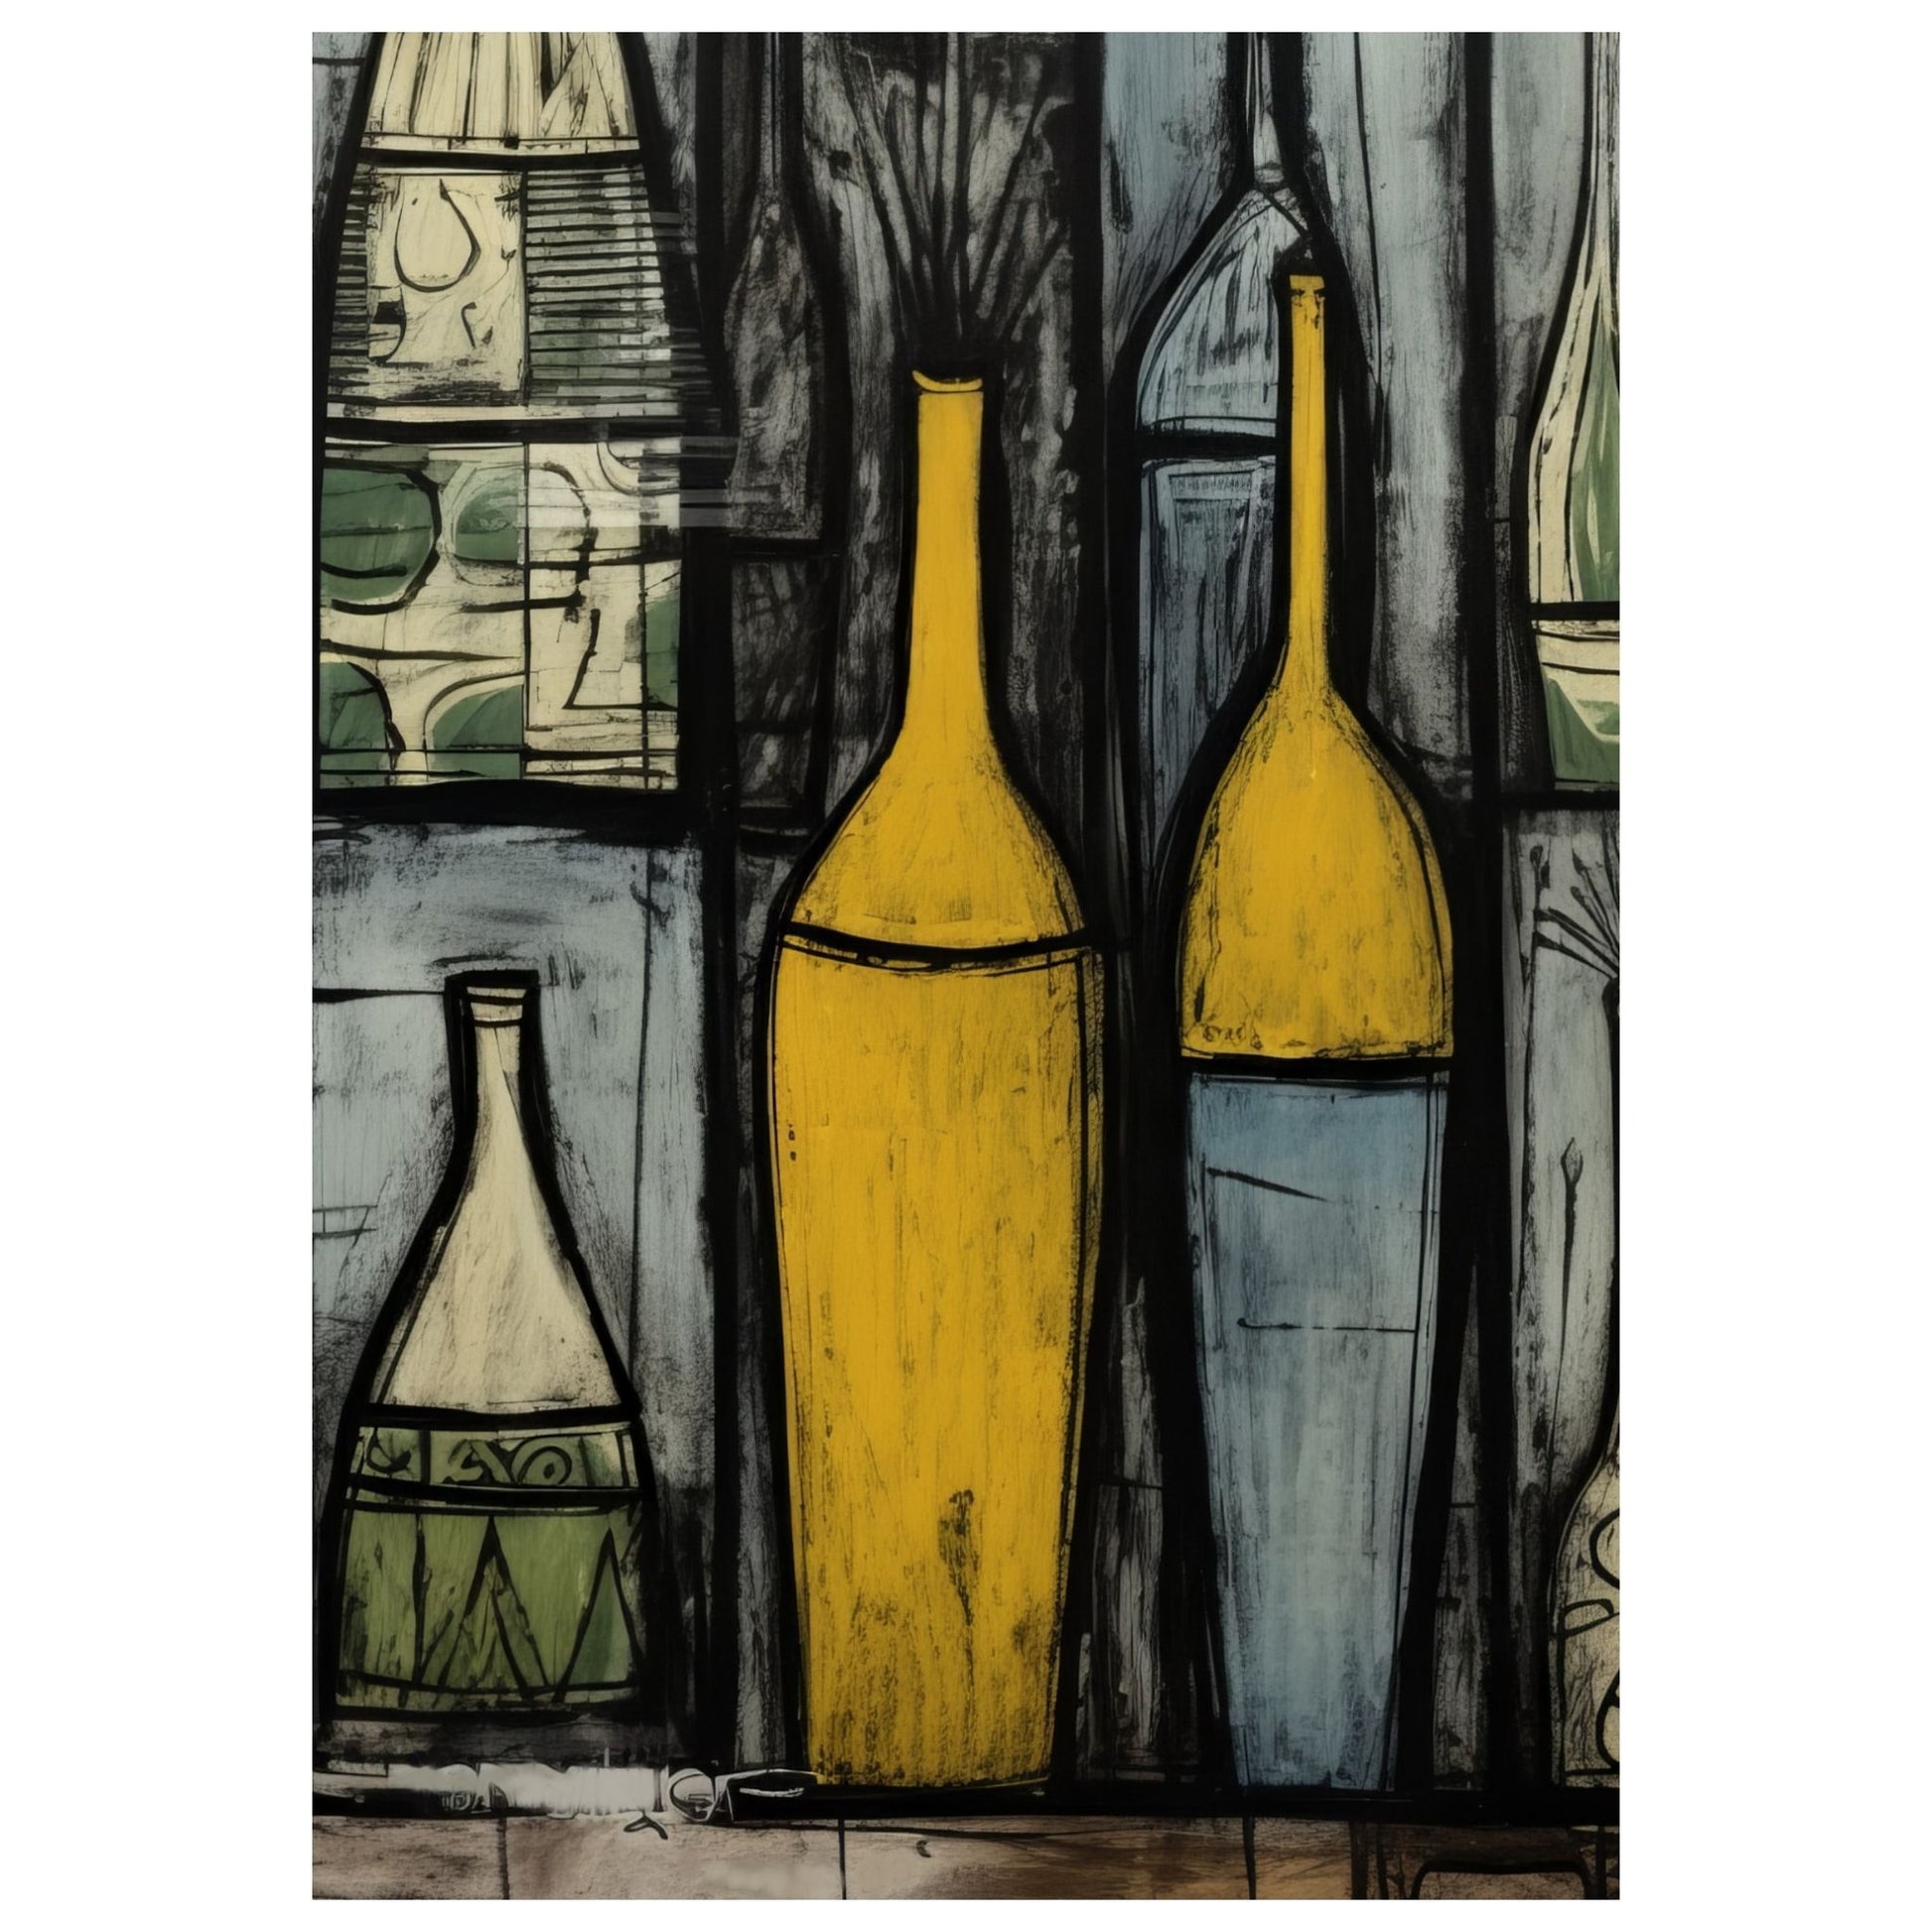 Grafisk motiv på lerret med dekorative flasker i ulike størrelser og fasonger. Motivet har oker, lyseblå, grå og sort som hovedfarger, og innslag av beige og grønne felter. 